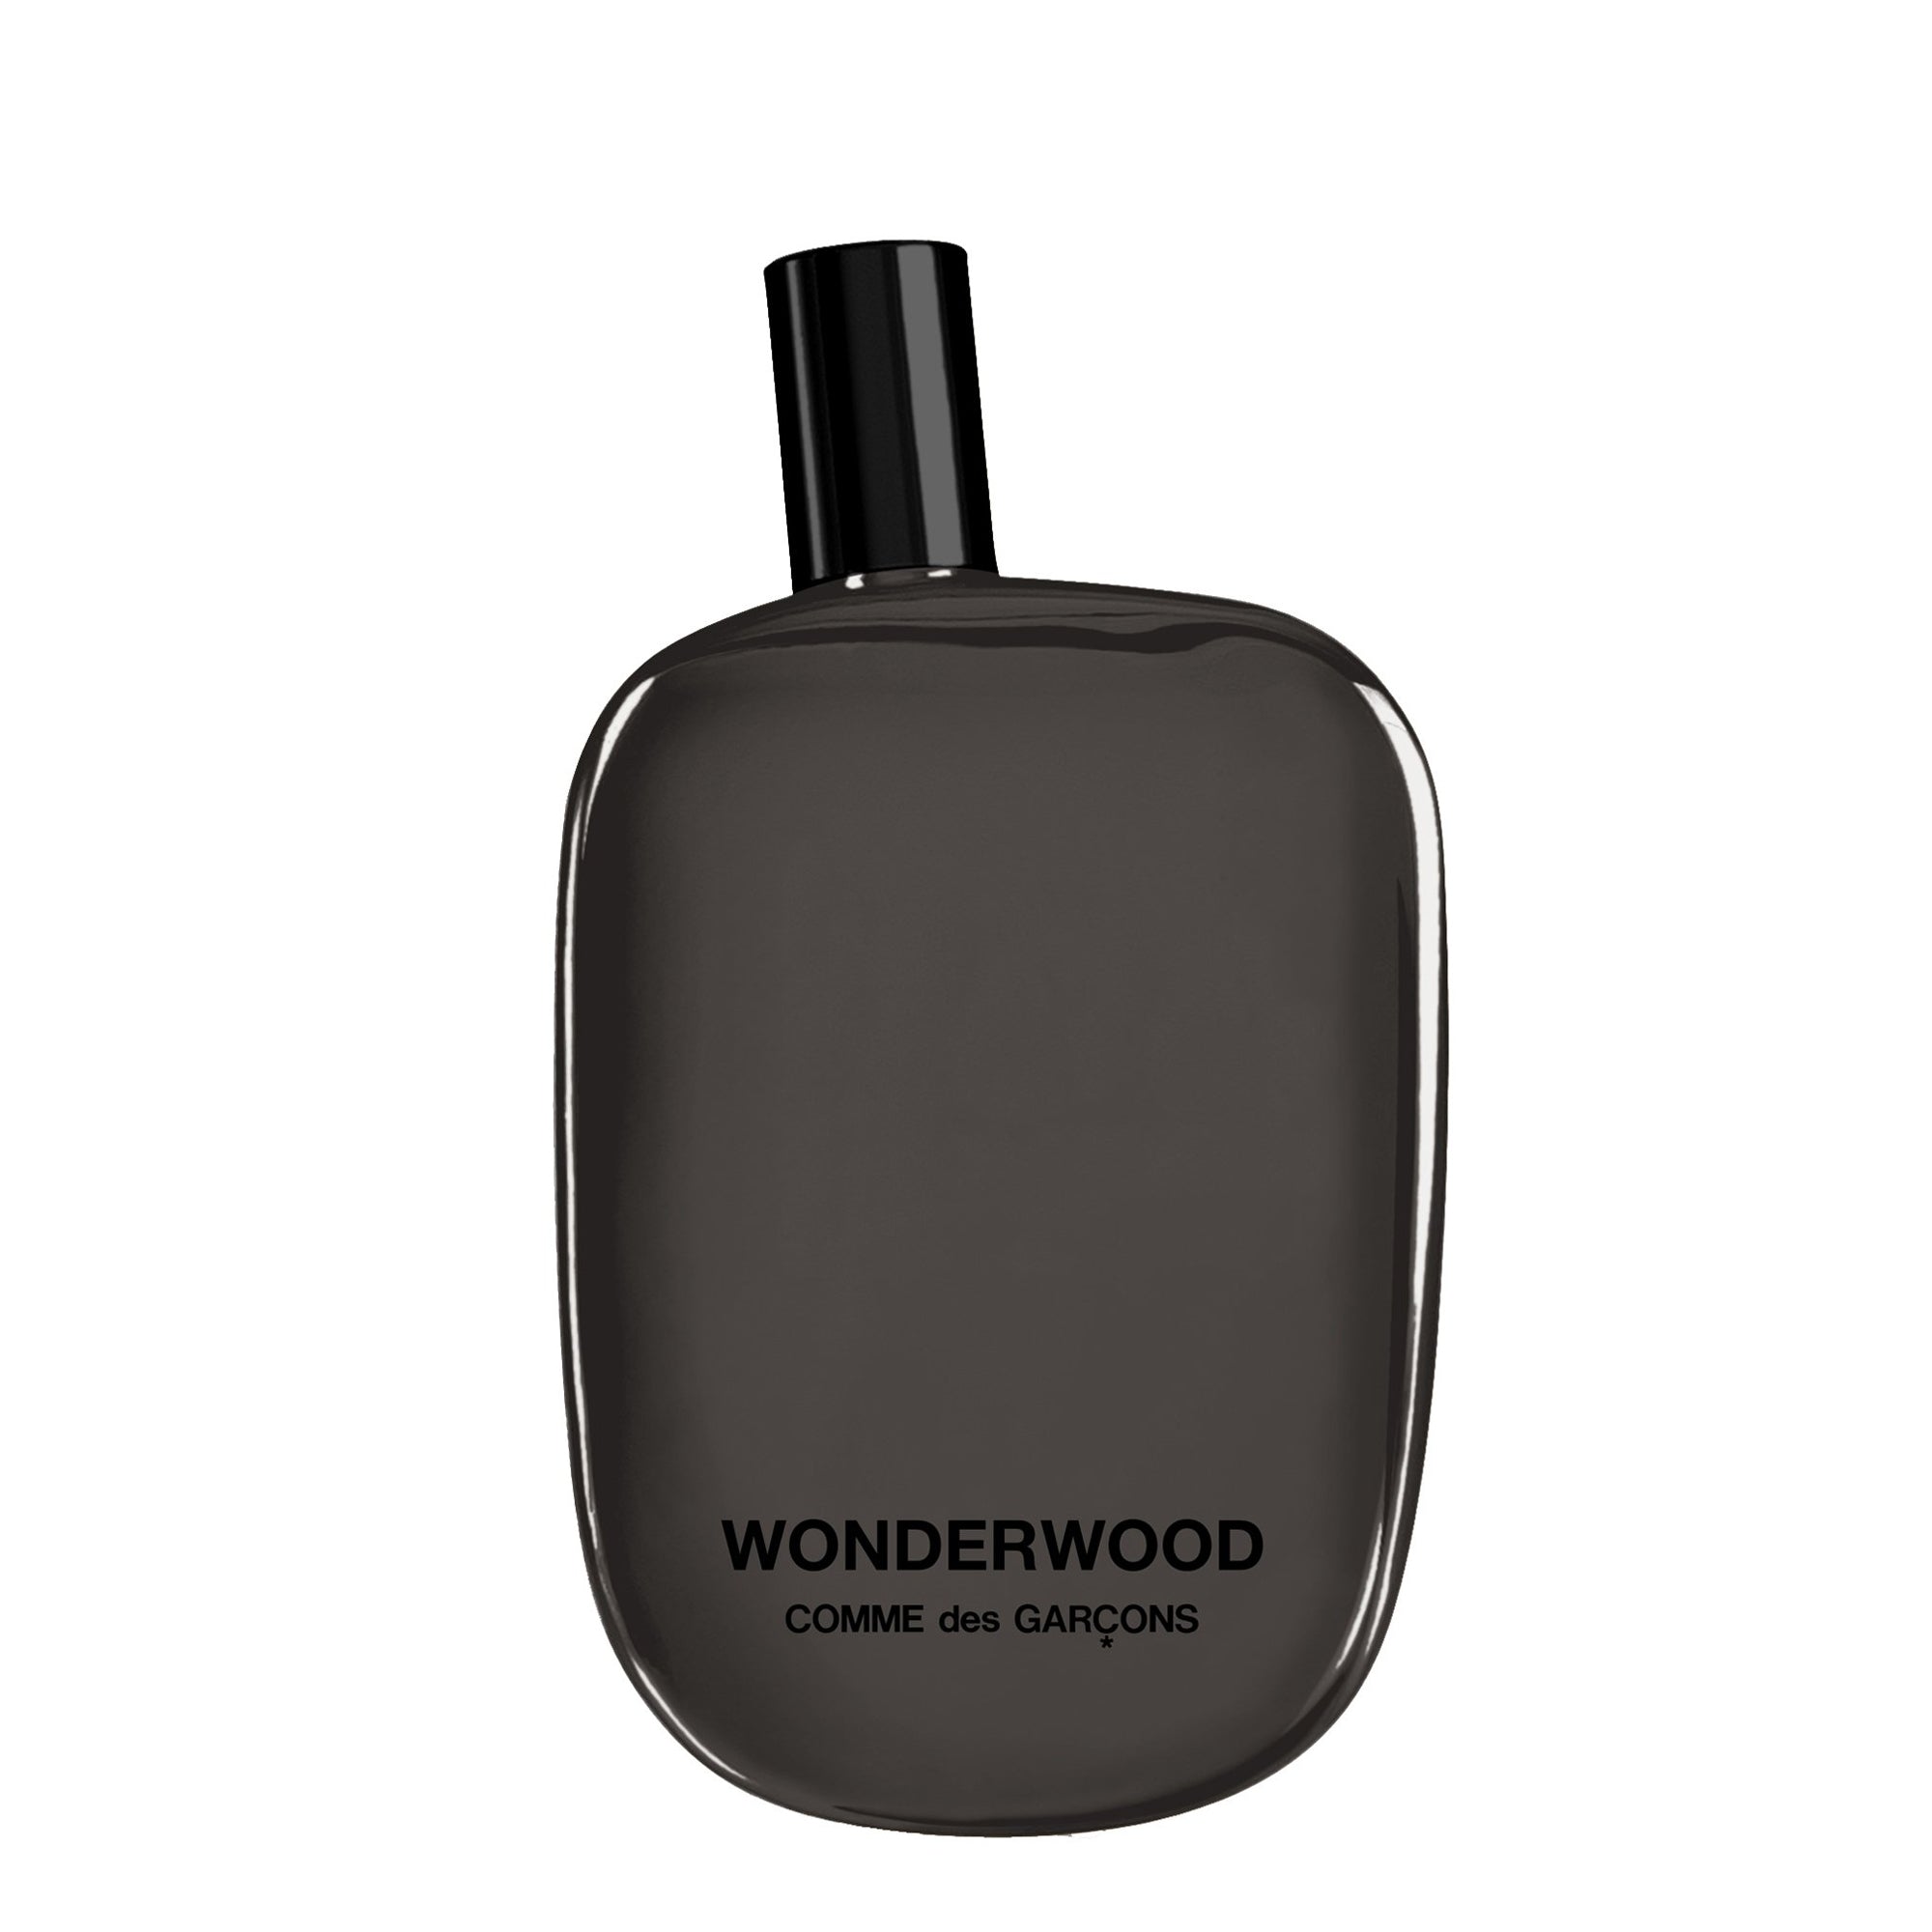 CDG PARFUM - Comme des Garçons Wonderwood Eau de Parfum - (natural spray) view 1